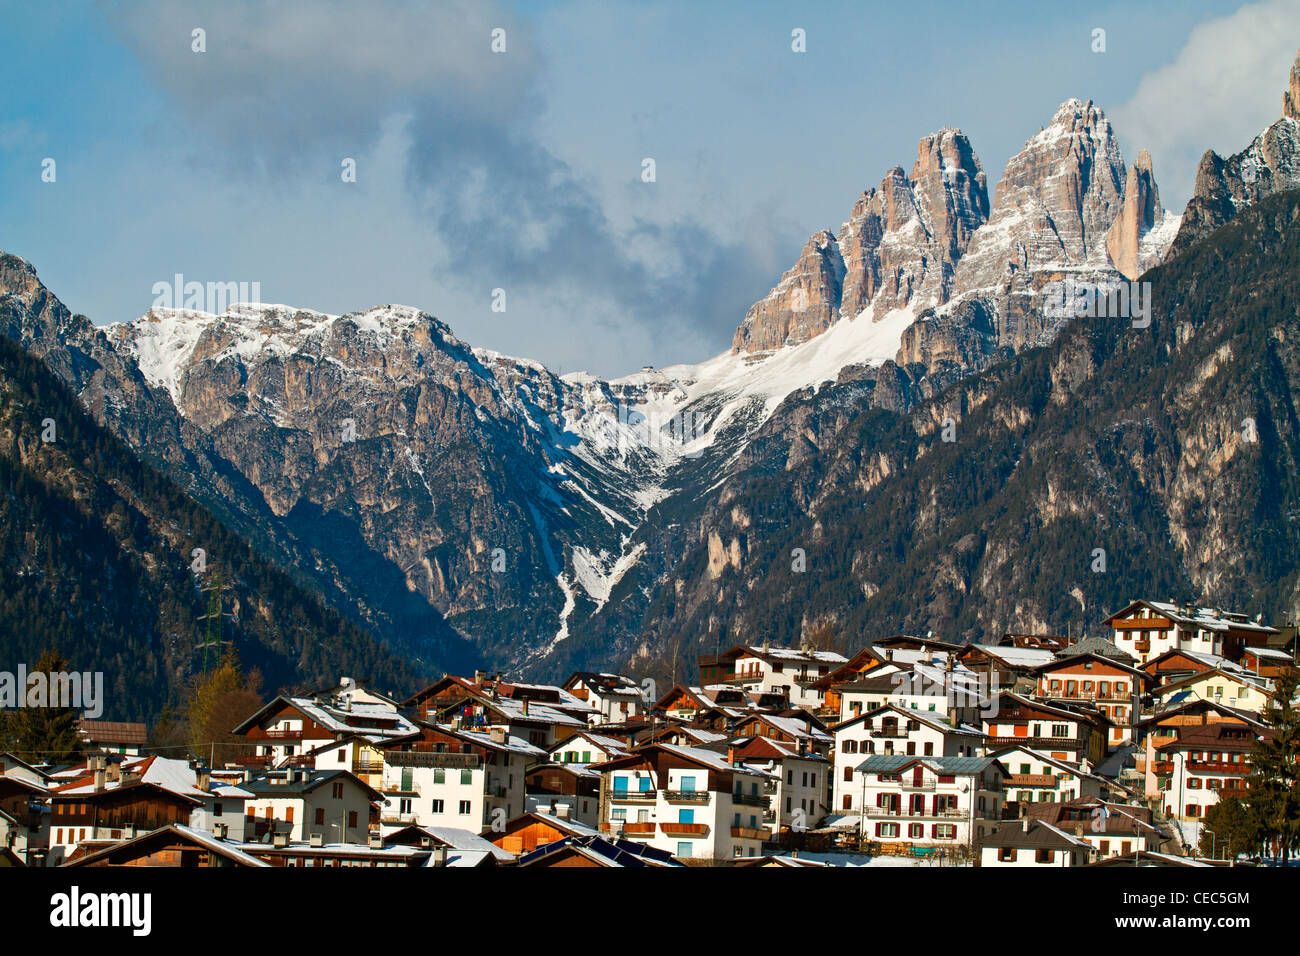 Auronzo di Cadore with Tre Cime di Lavaredo in the background, Dolomites, Italy Stock Photo